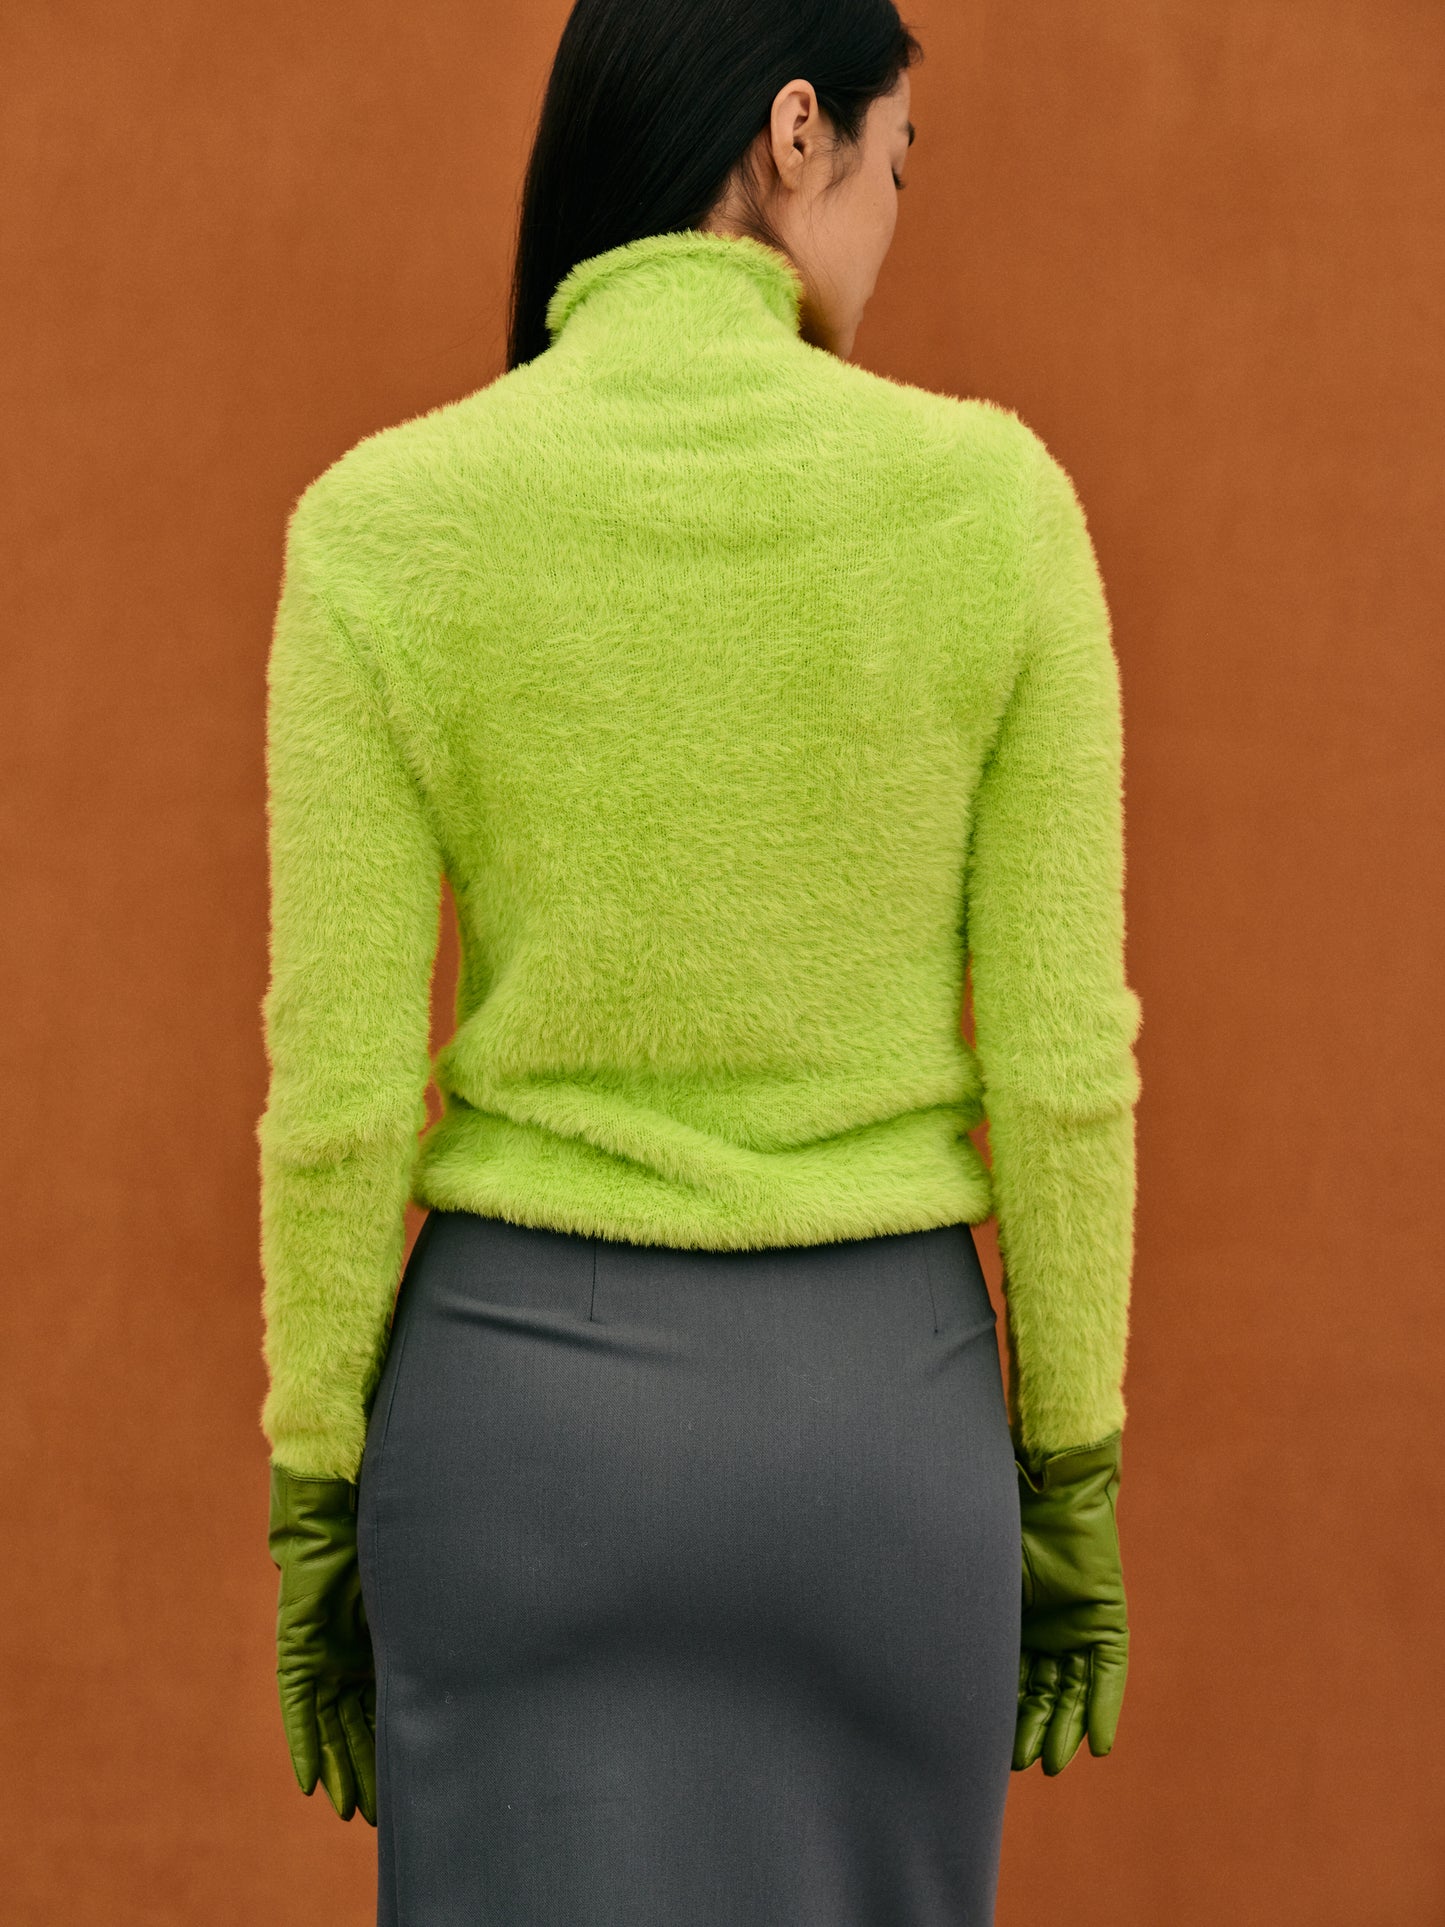 Brushed Knit Turtleneck, Apple Green